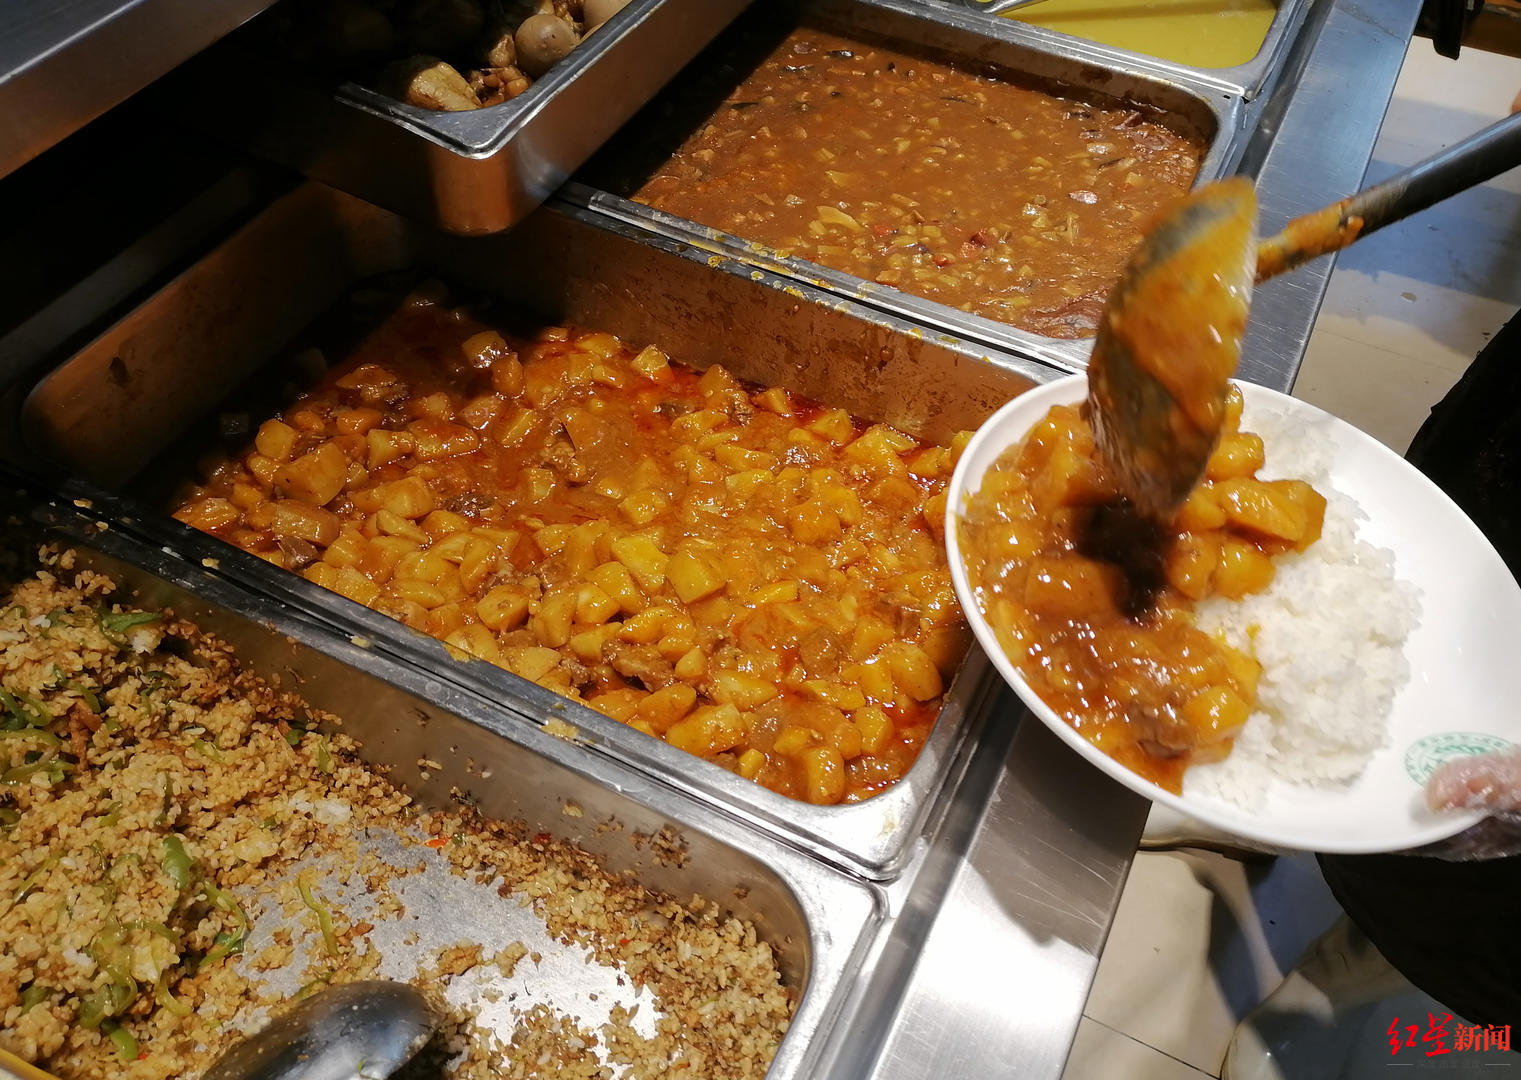 成都市第一人民医院餐厅供应的土豆烧排骨 摄影记者 张直